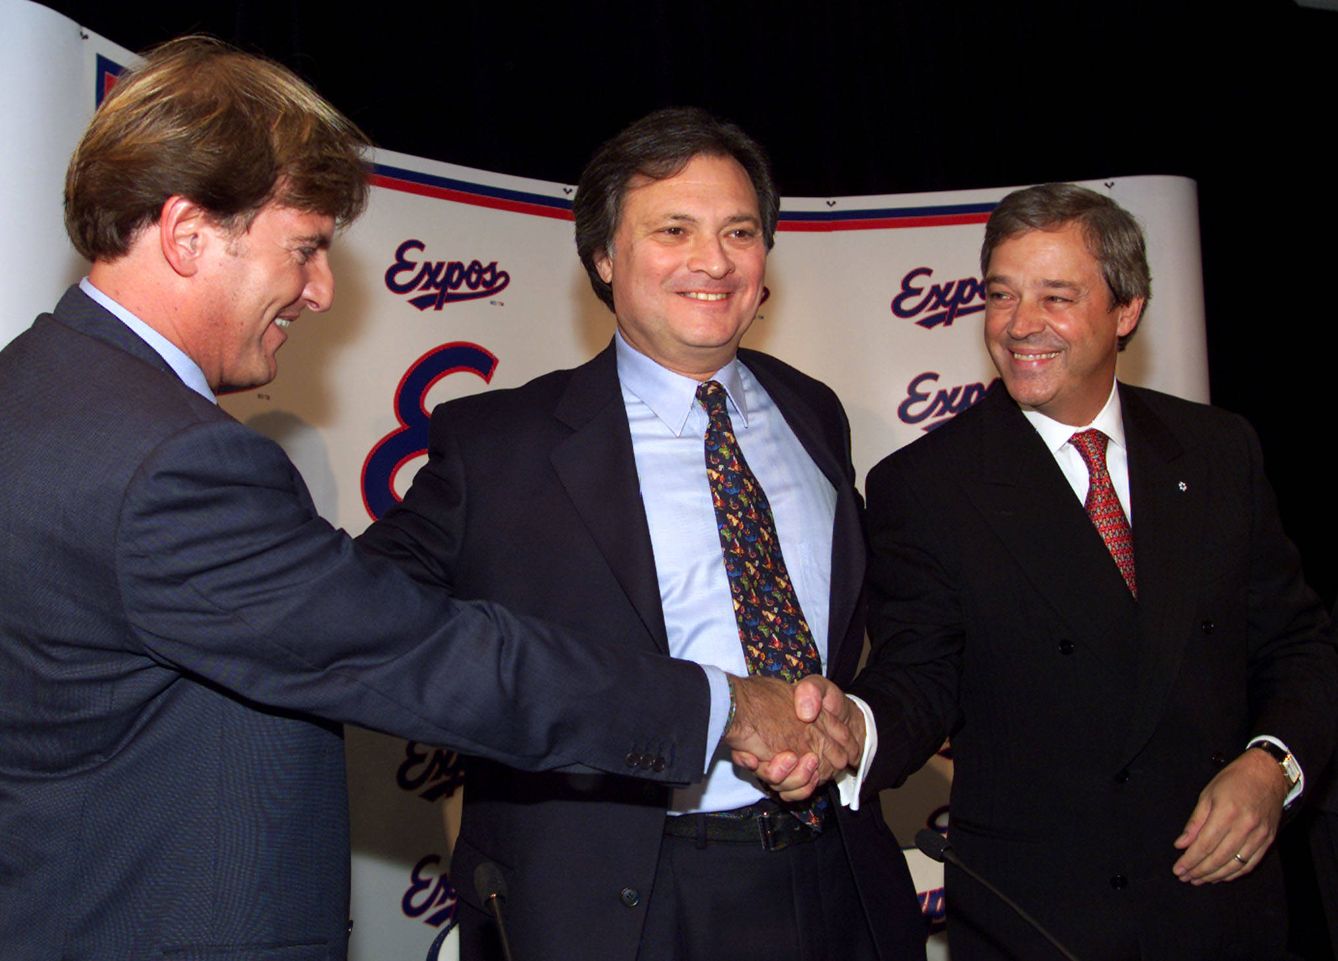 Stephen Bronfman, con los dueños de las Expos de Montreal, durante la rueda de prensa de un negocio inmobiliario, en 1999. (Reuters)